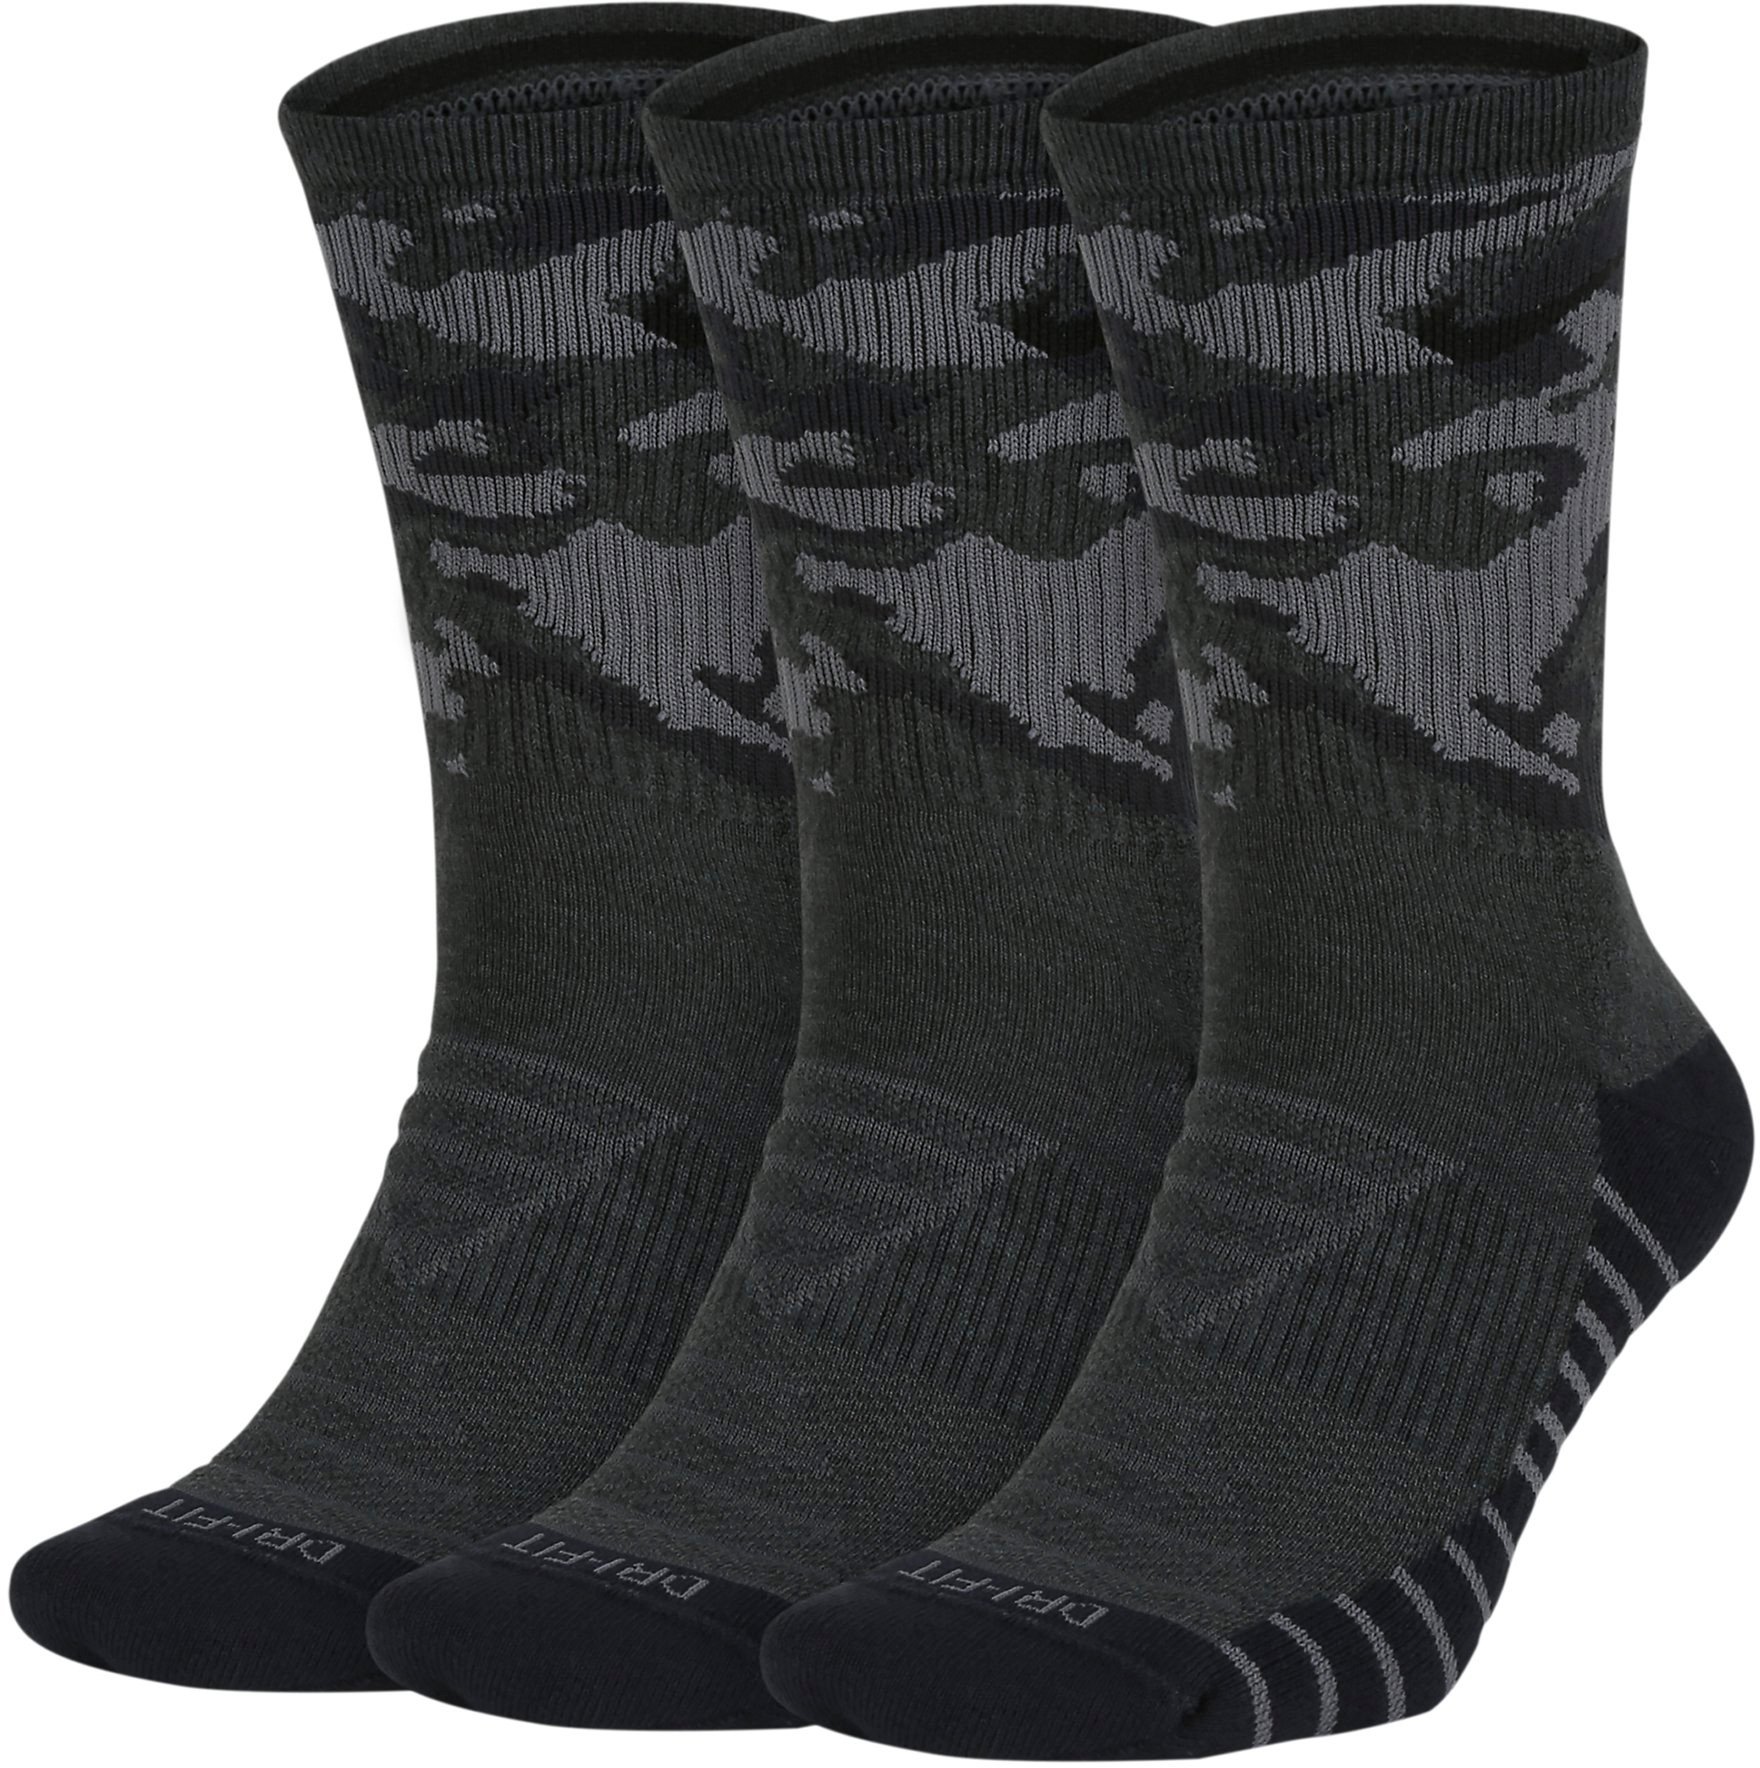 Tréninkové ponožky Nike Everyday Max Cushion Camo (3 páry)